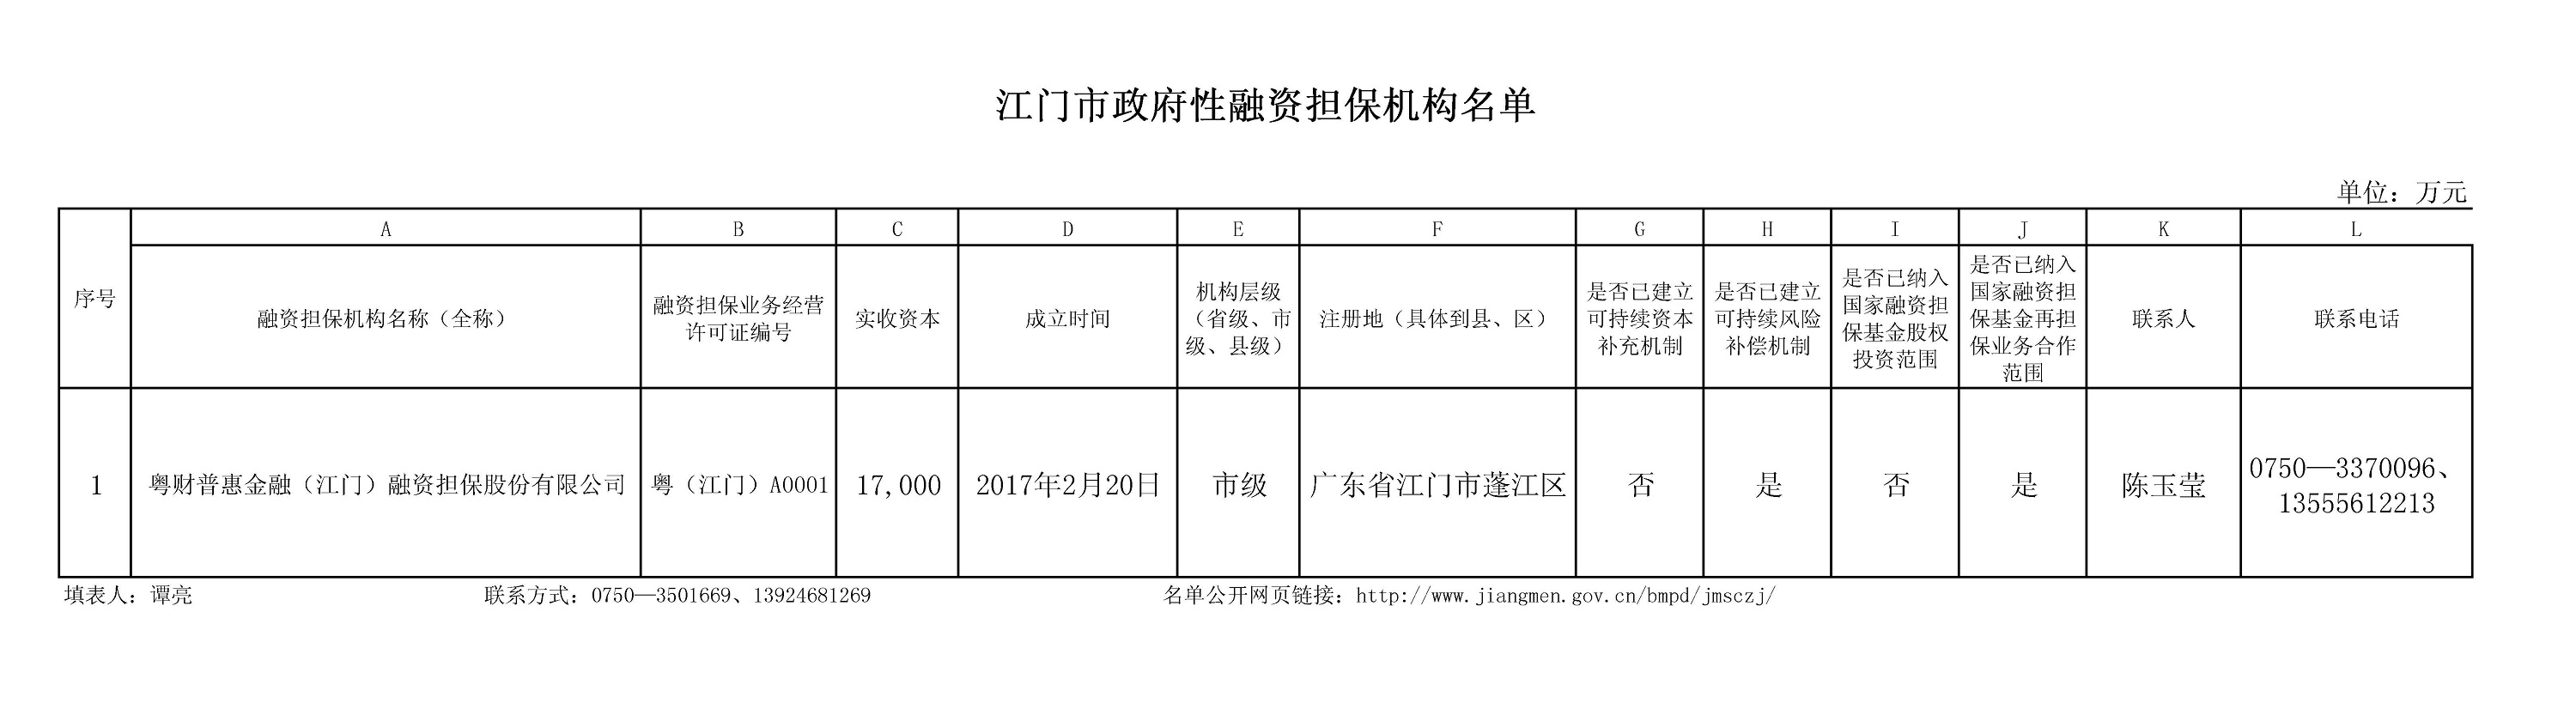 广东省江门市政府性融资担保机构名单.jpg